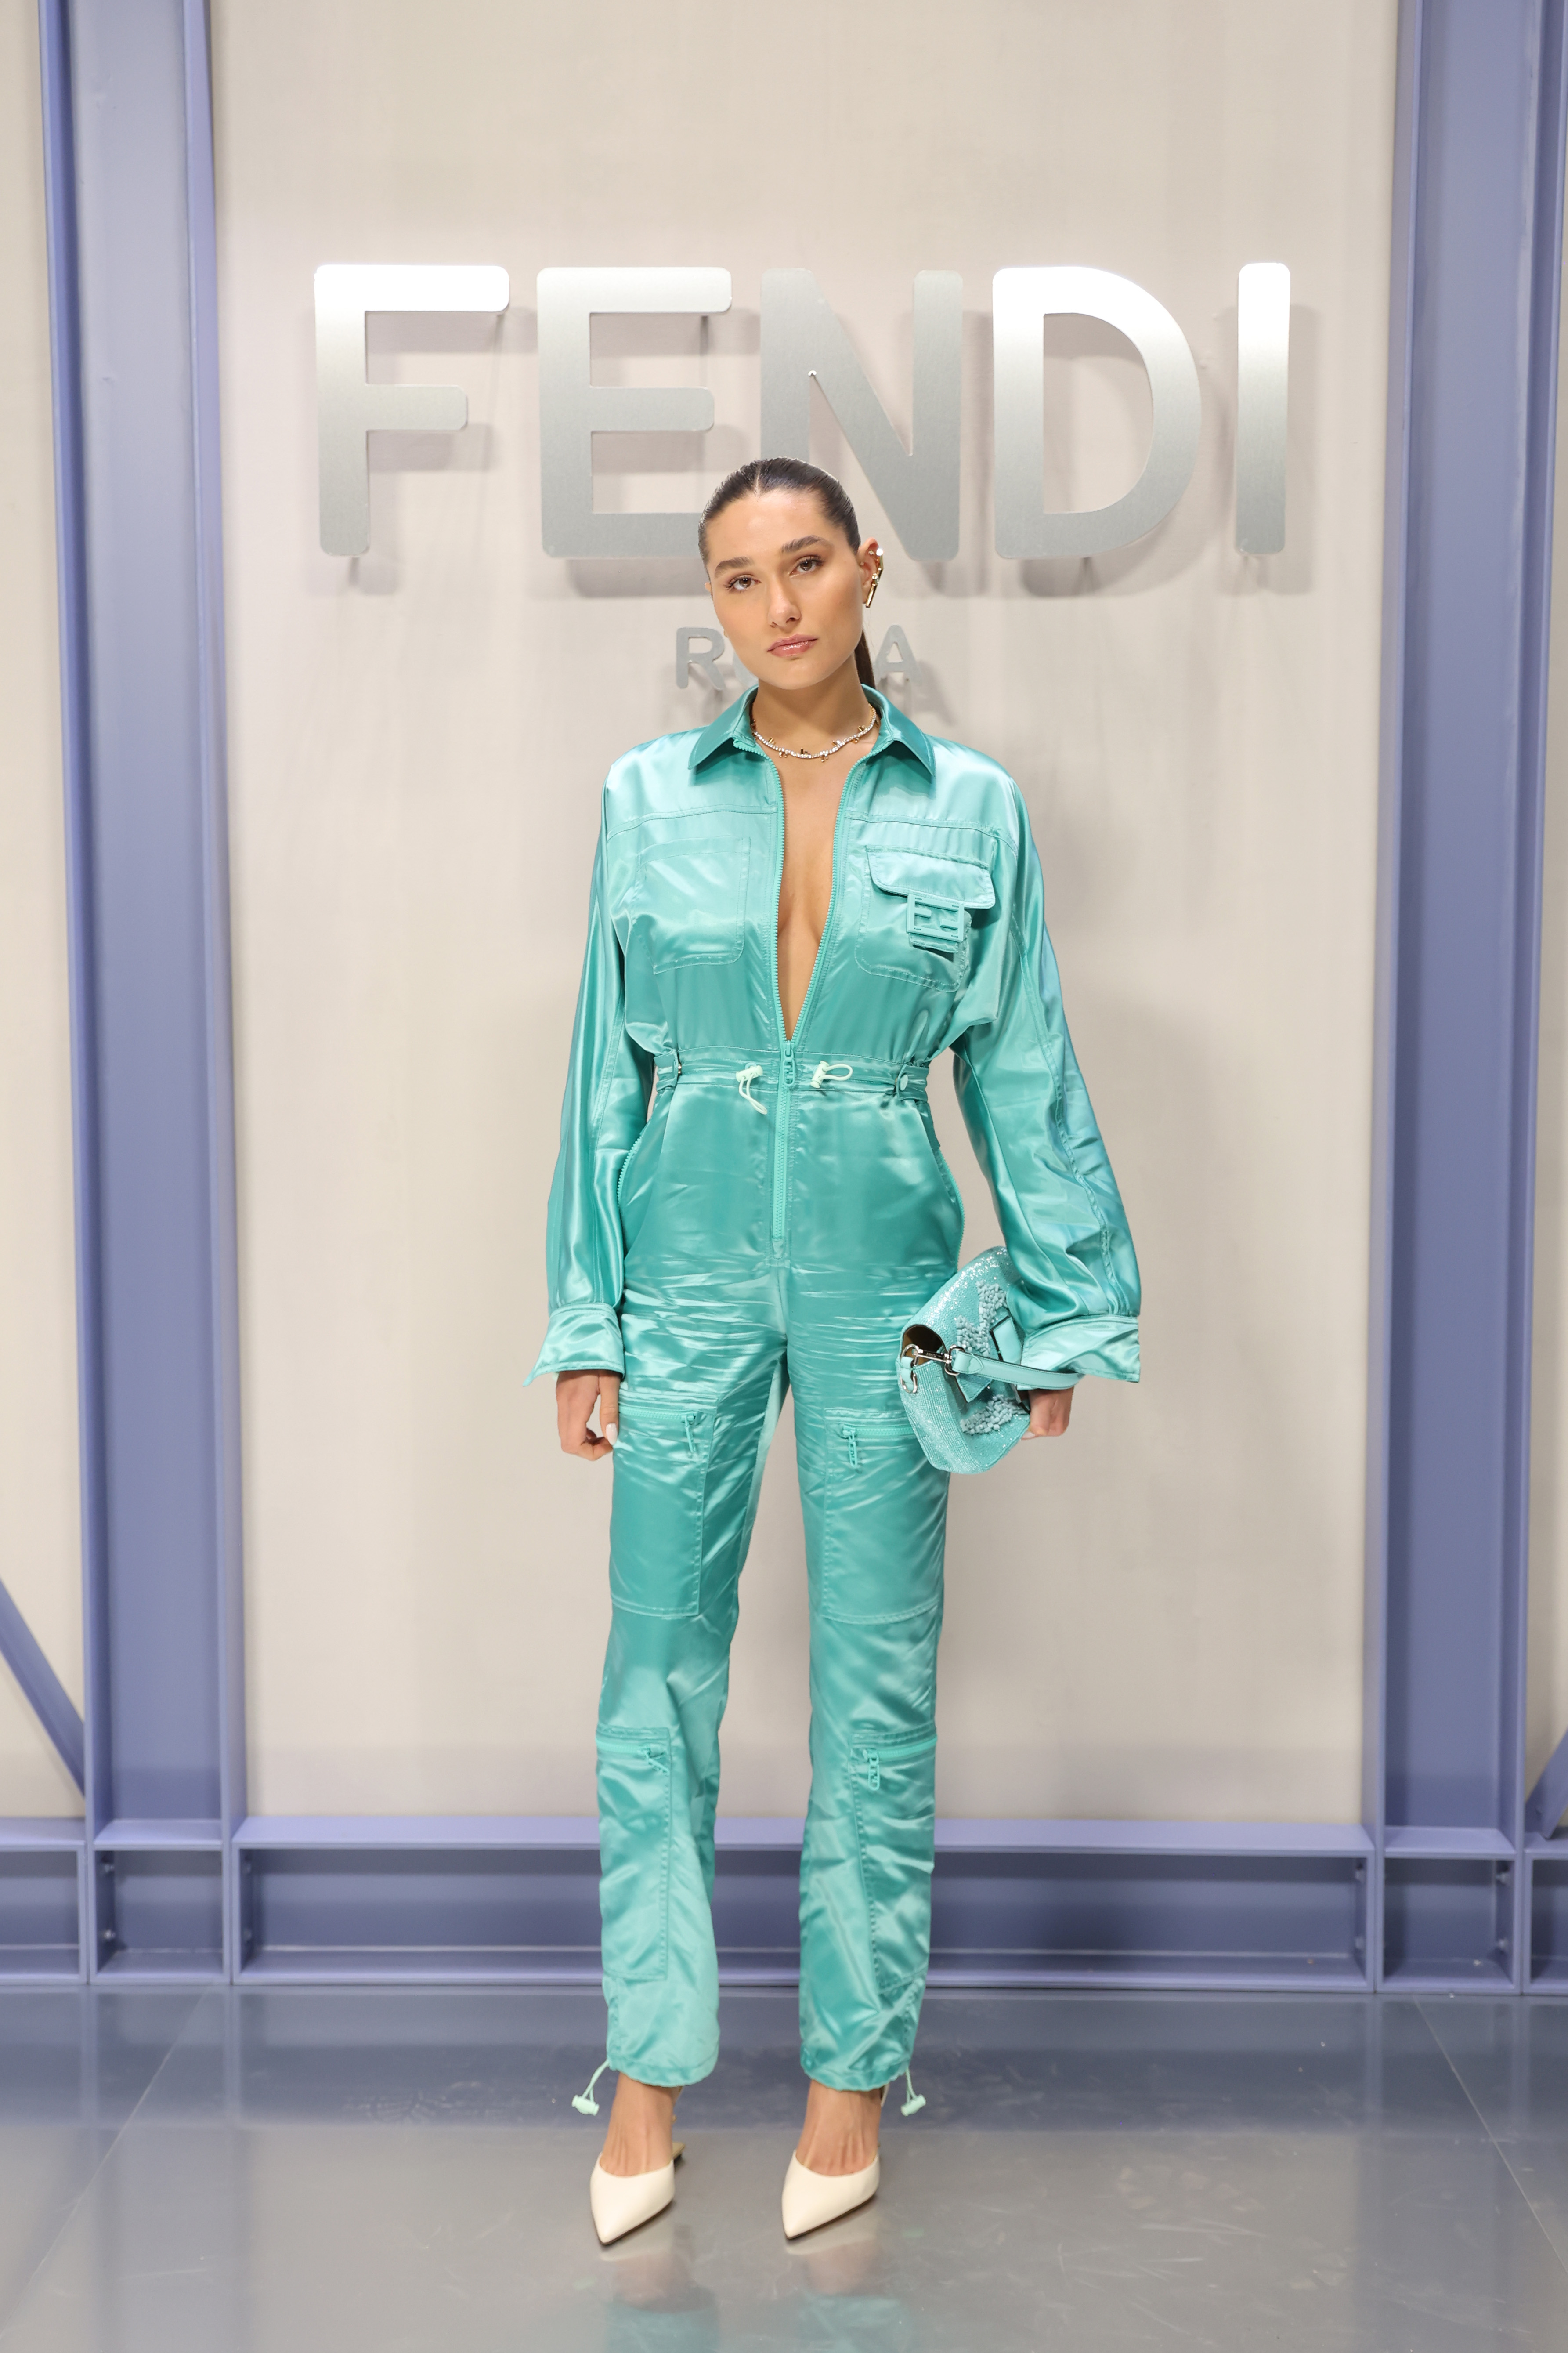 Sasha Meneghel at Fendi's Spring-Summer 2023 show at Milan Fashion Week wearing a turquoise jumpsuit